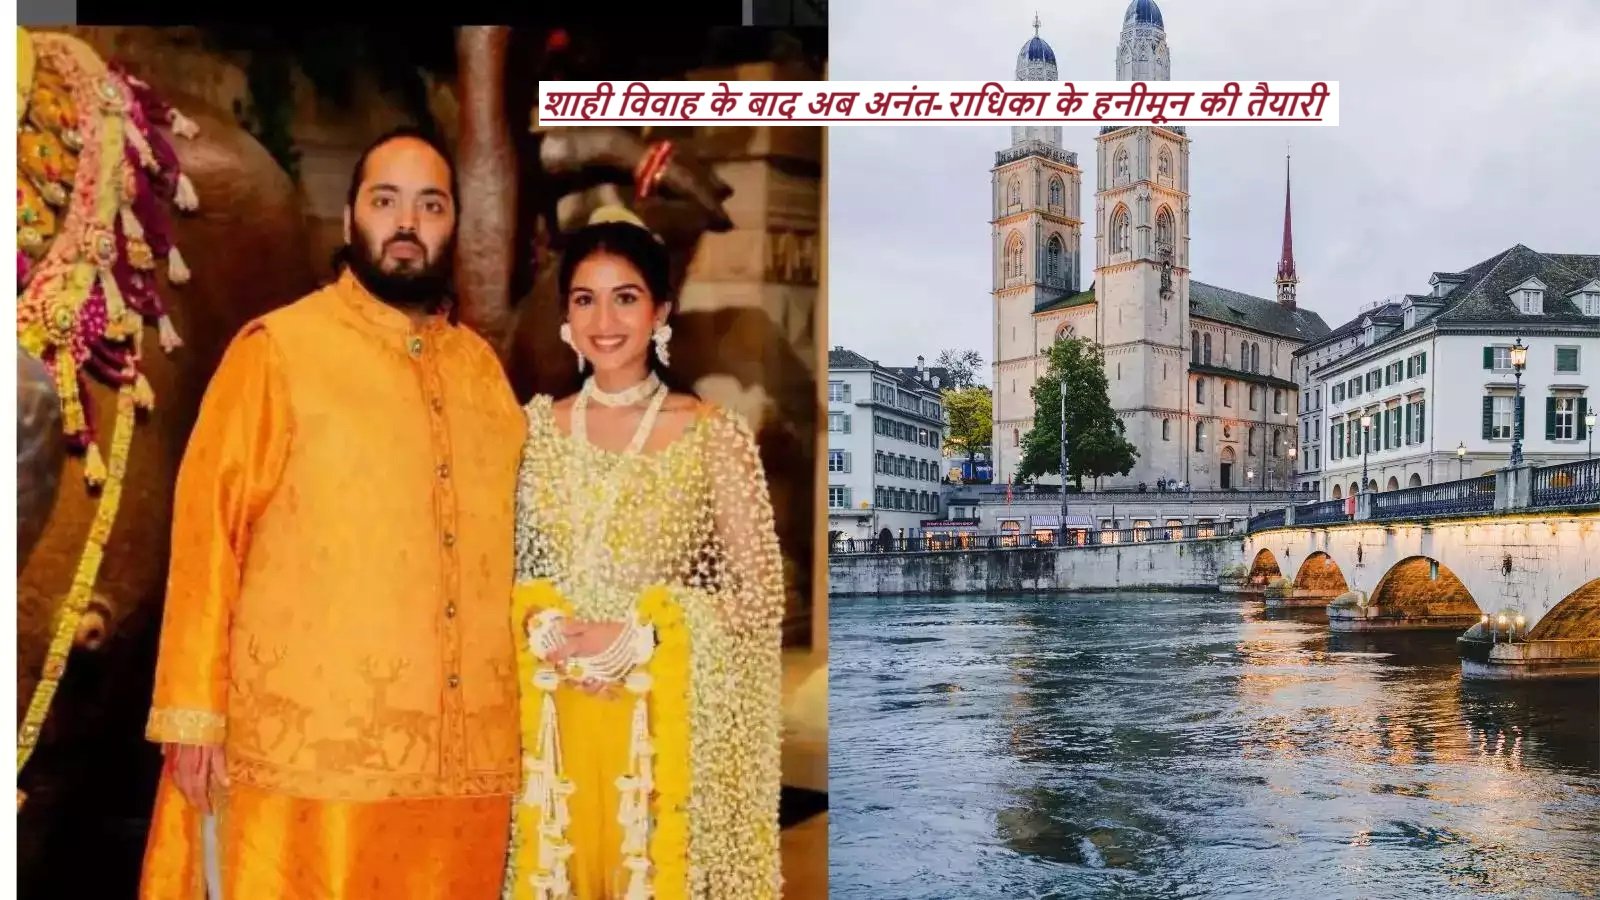 Anant-Radhika Honeymoon: शाही विवाह के बाद अब अनंत-राधिका के हनीमून की तैयारी शुरू! जानें- कहां रोमांटिक समय बिता सकते हैं |